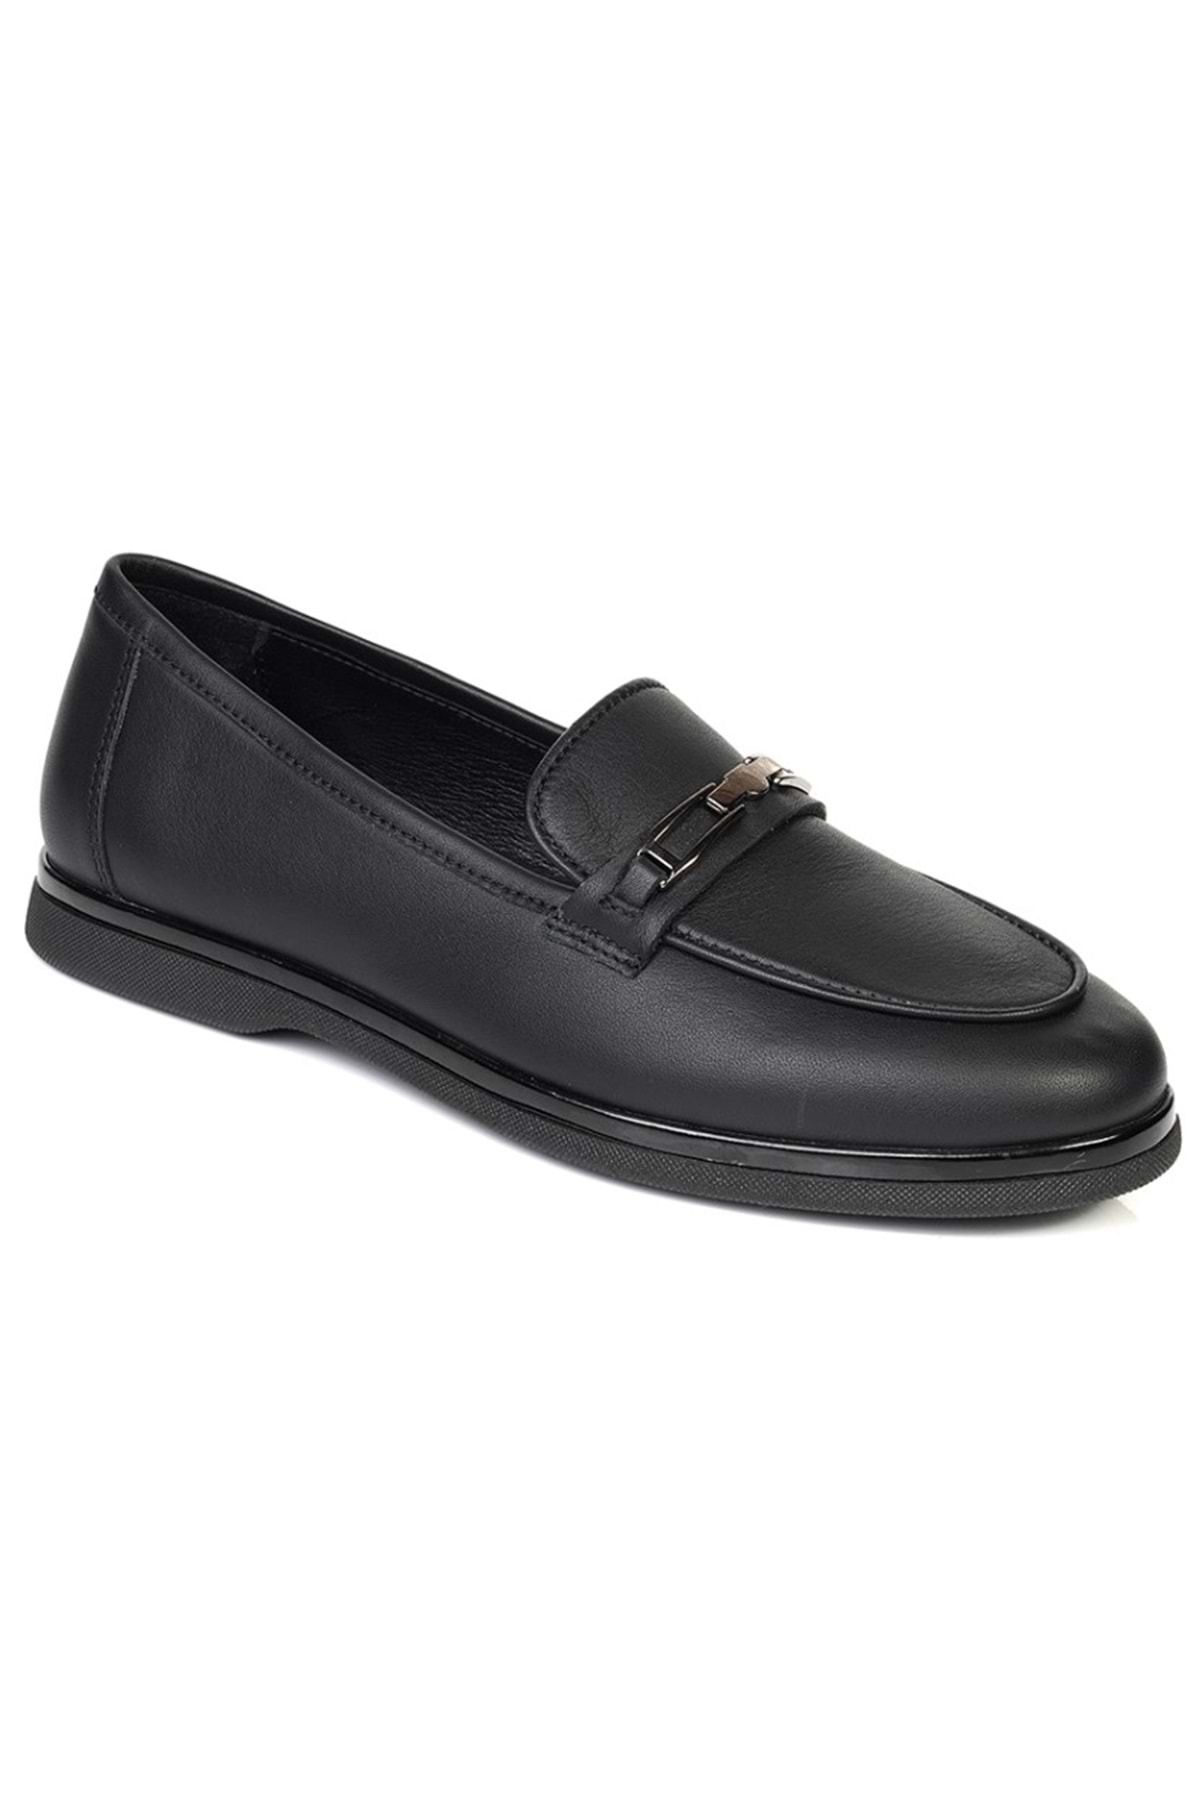 Greyder 33650 Zn Deri Comfort Casual Kadın Ayakkabı Siyah